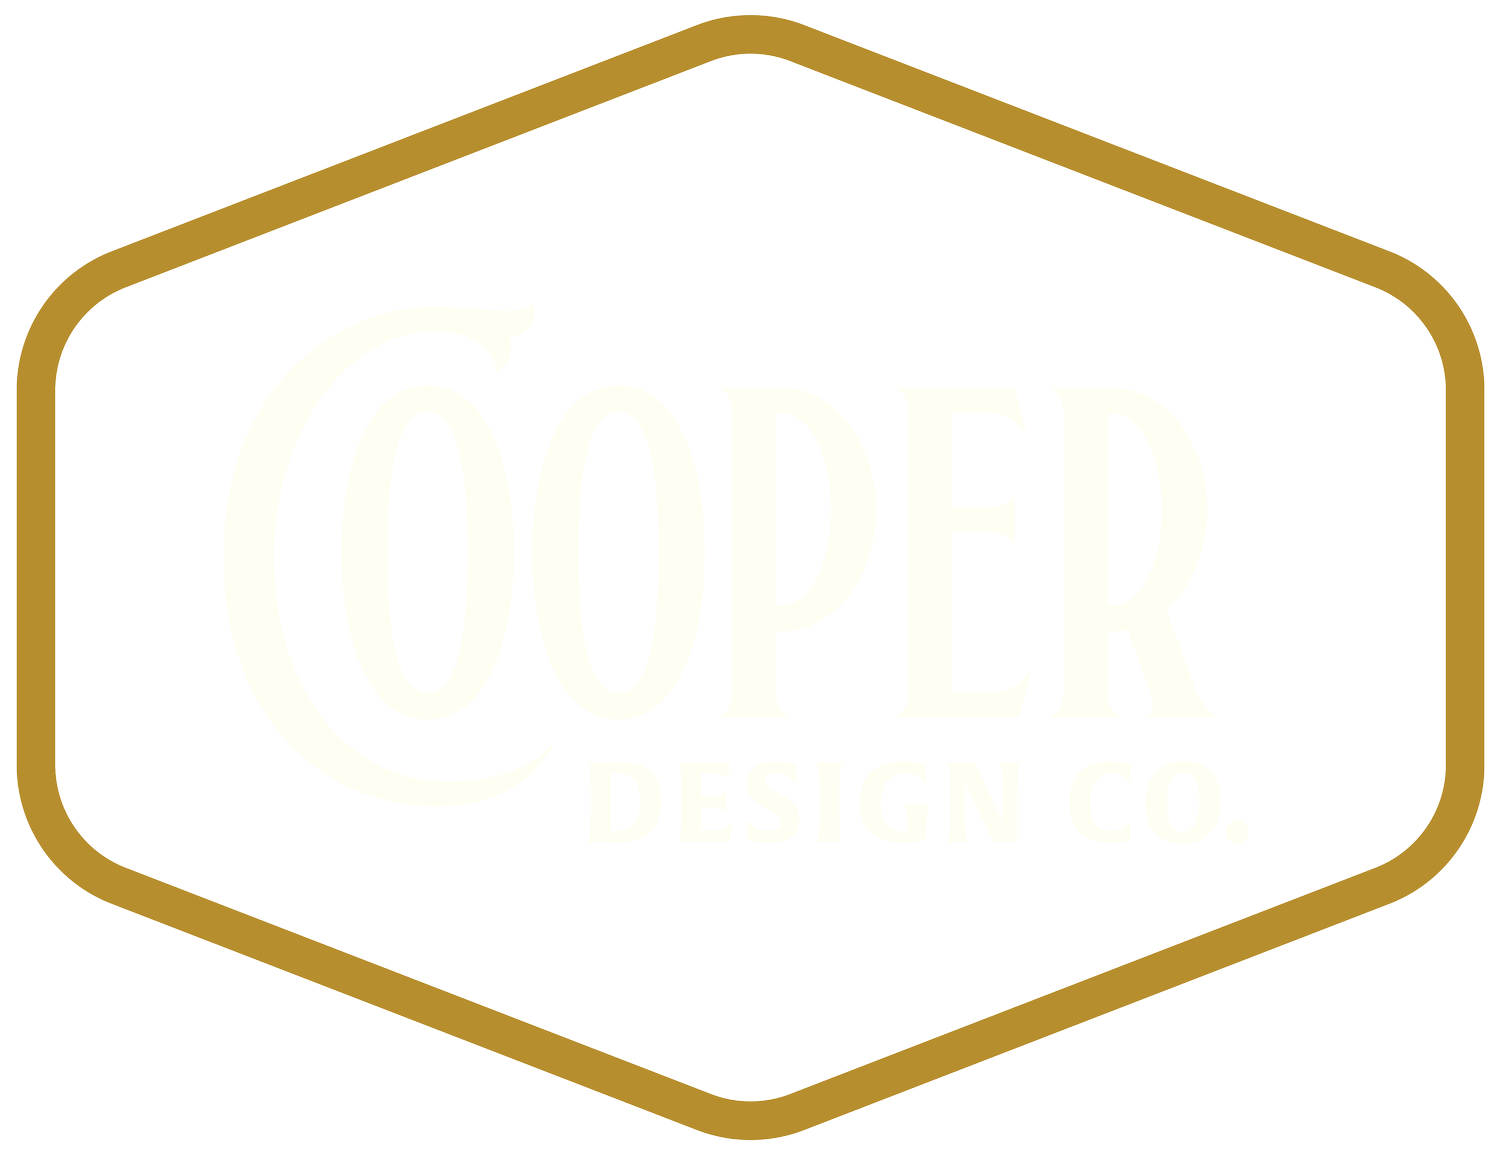 Cooper Design Co.